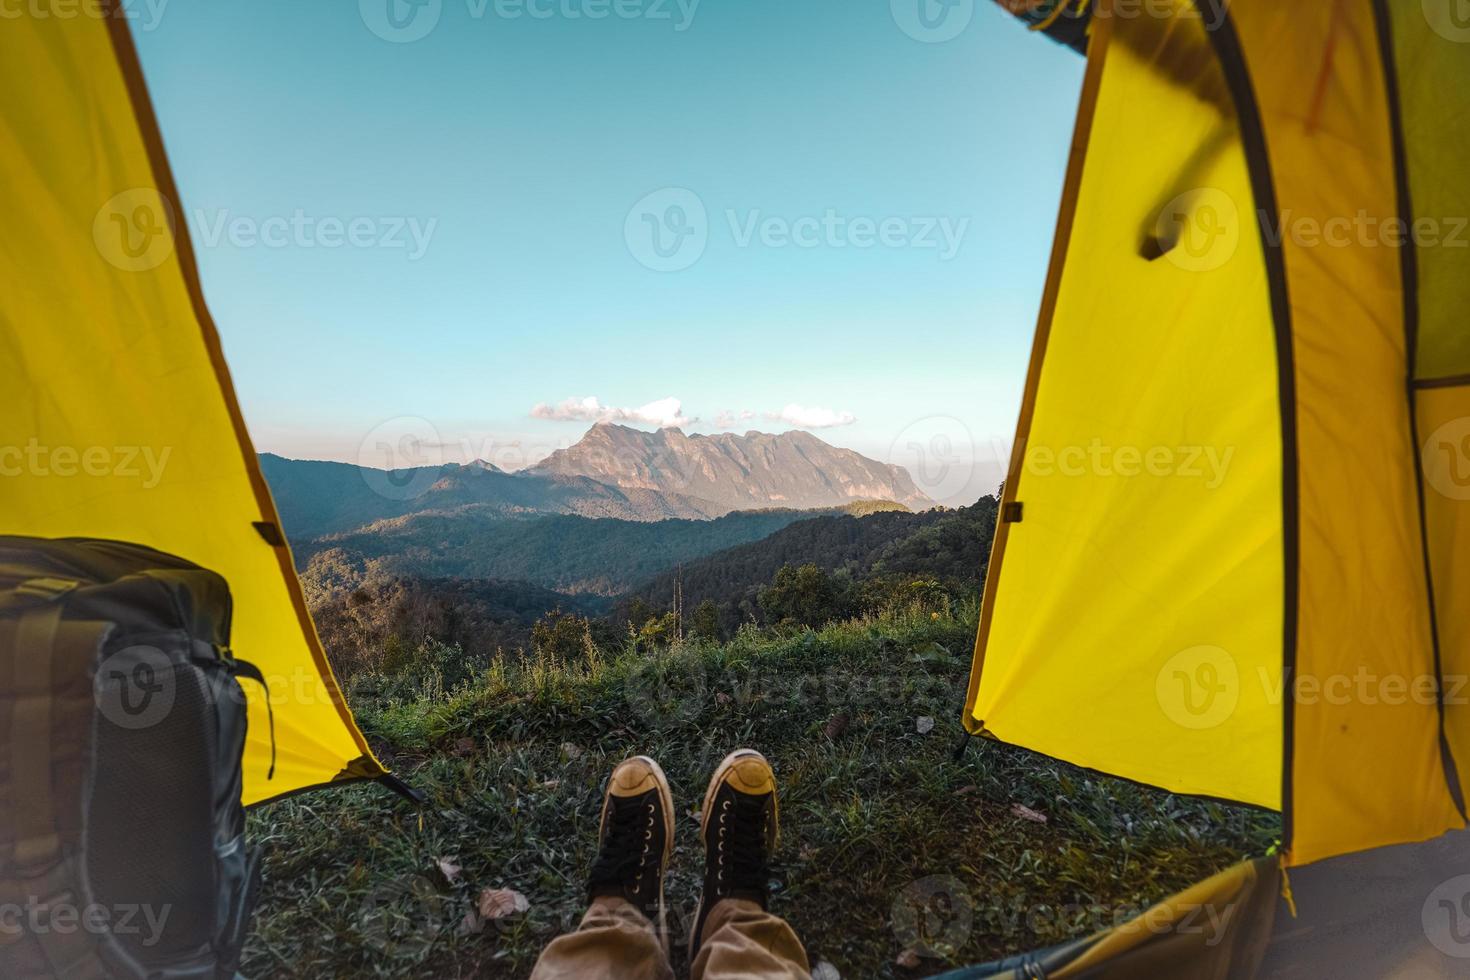 gult tält på berget och utsikt över solnedgången foto